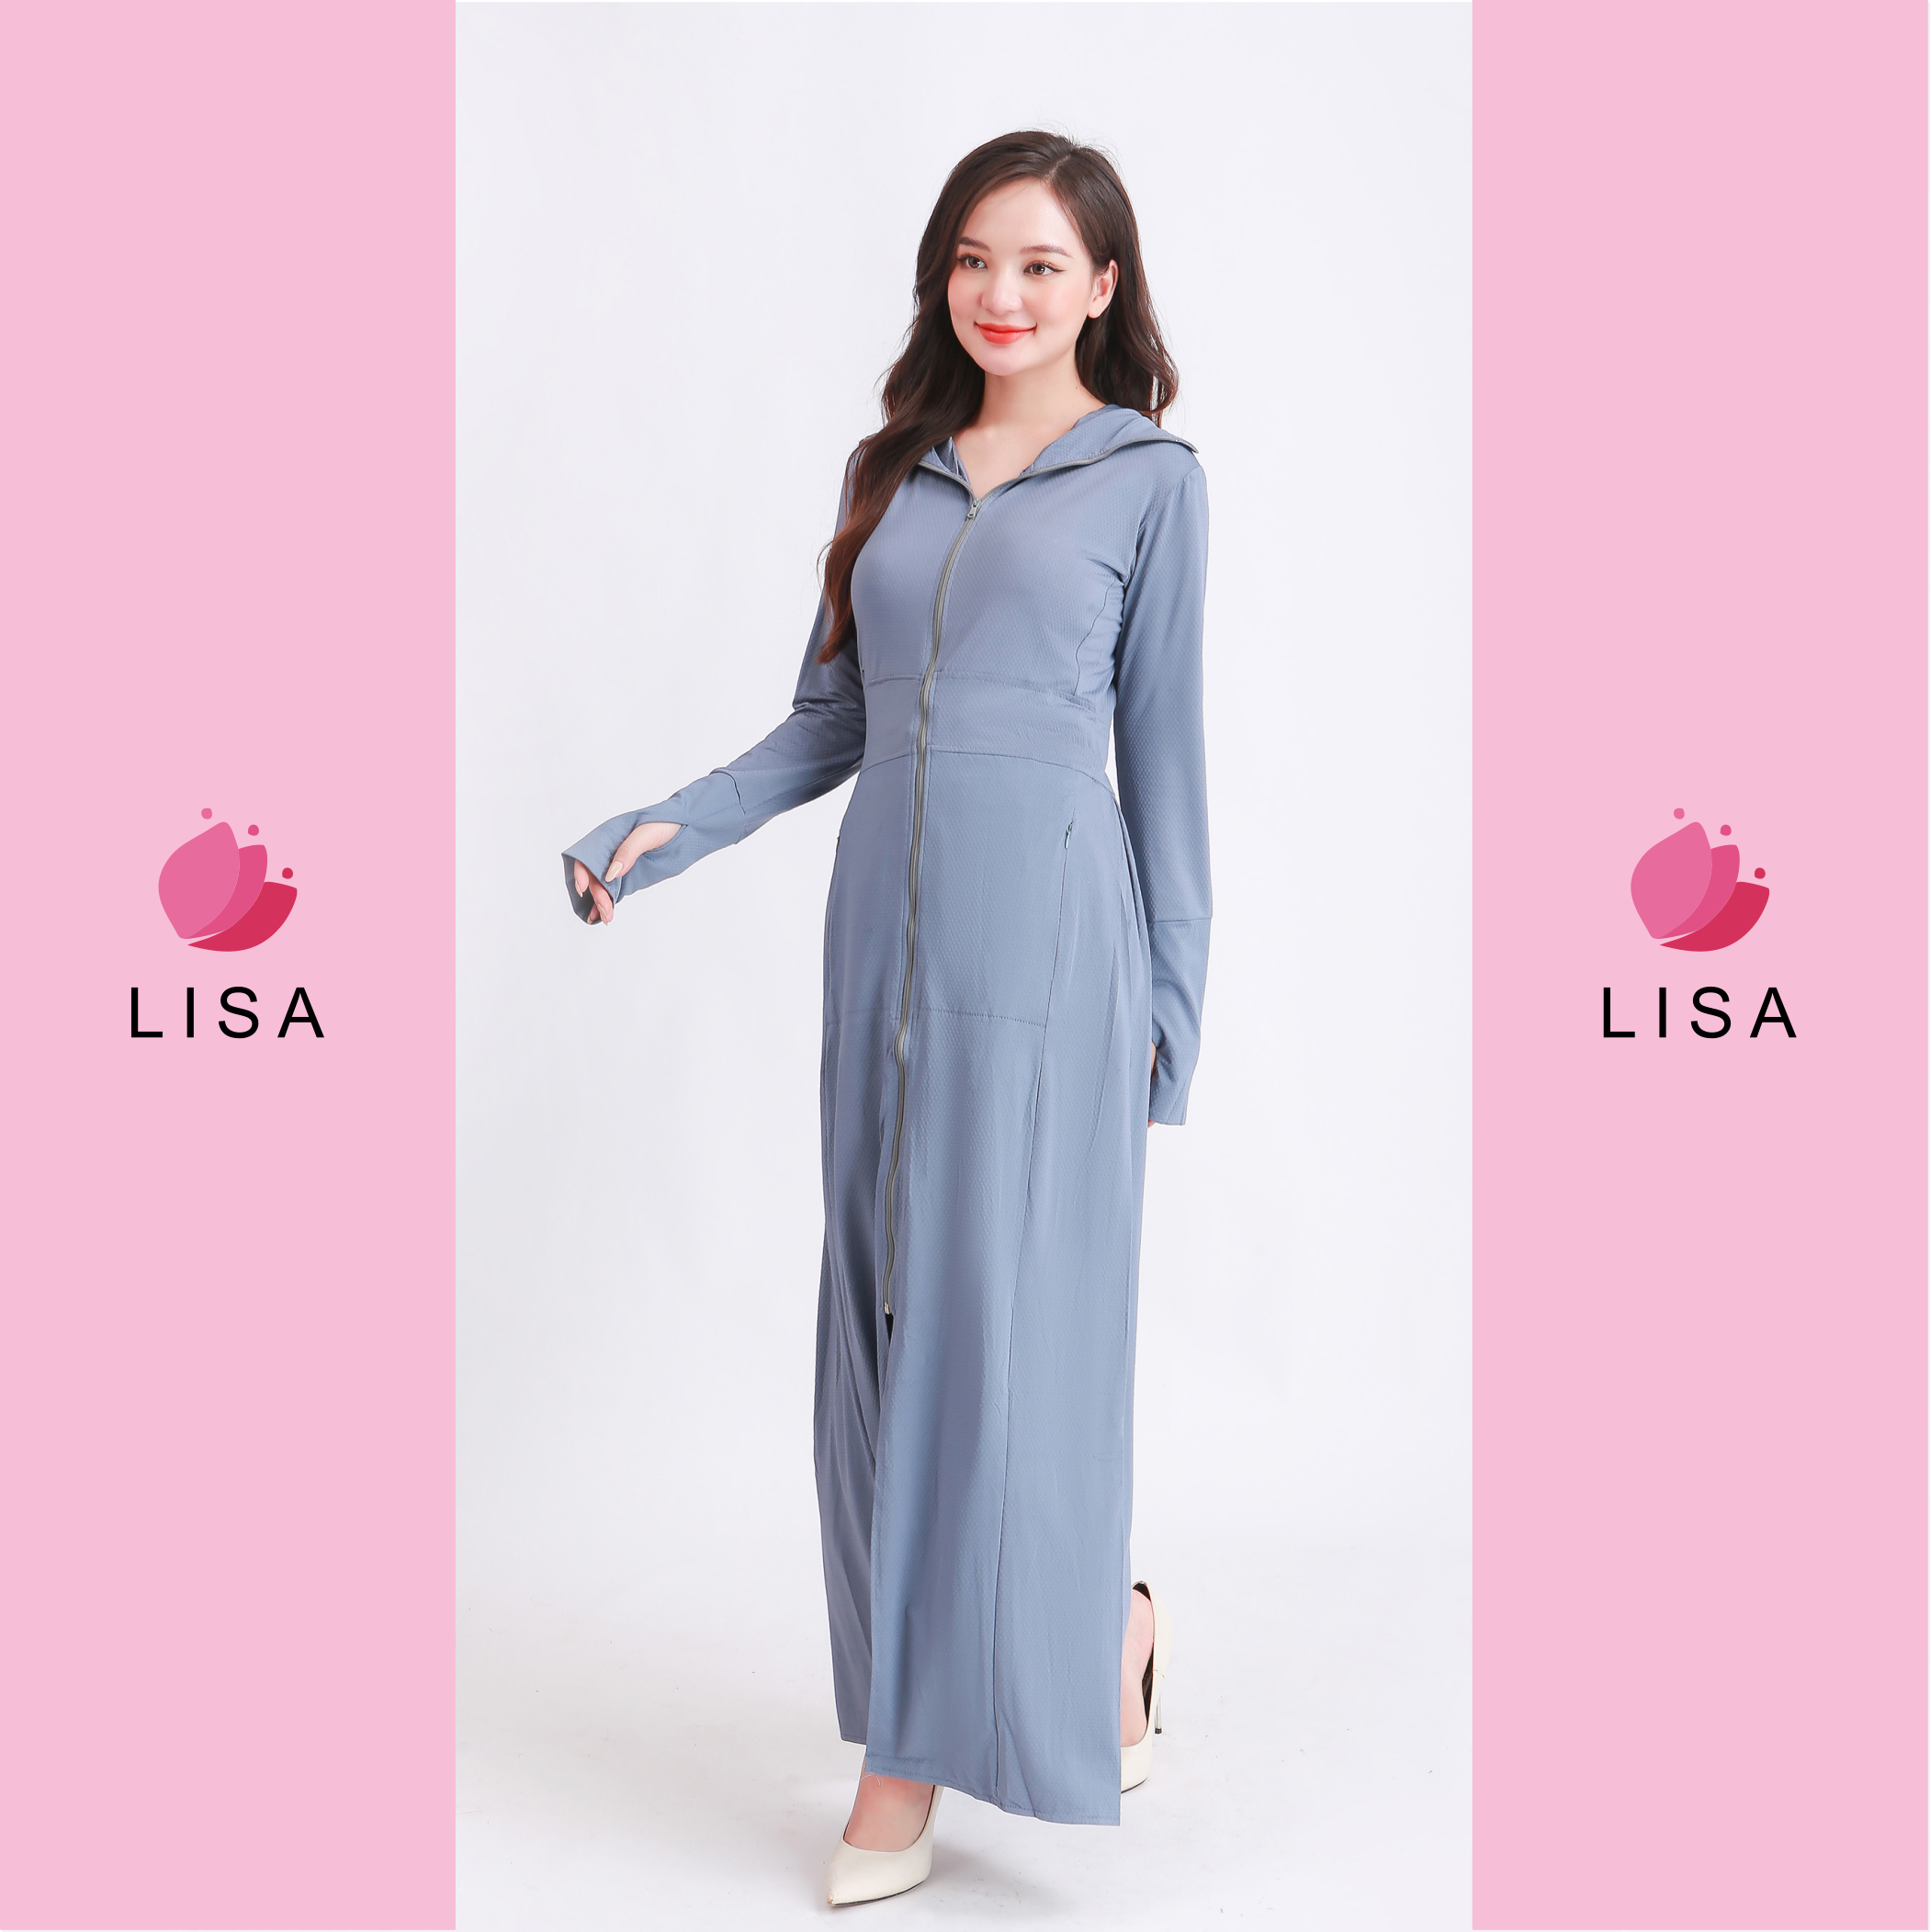 Áo chống nắng nữ toàn thân 2 lớp dáng dài, váy chống nắng áo choàng liền thân vải thông hơi làm mát cao cấp, Lisa M41